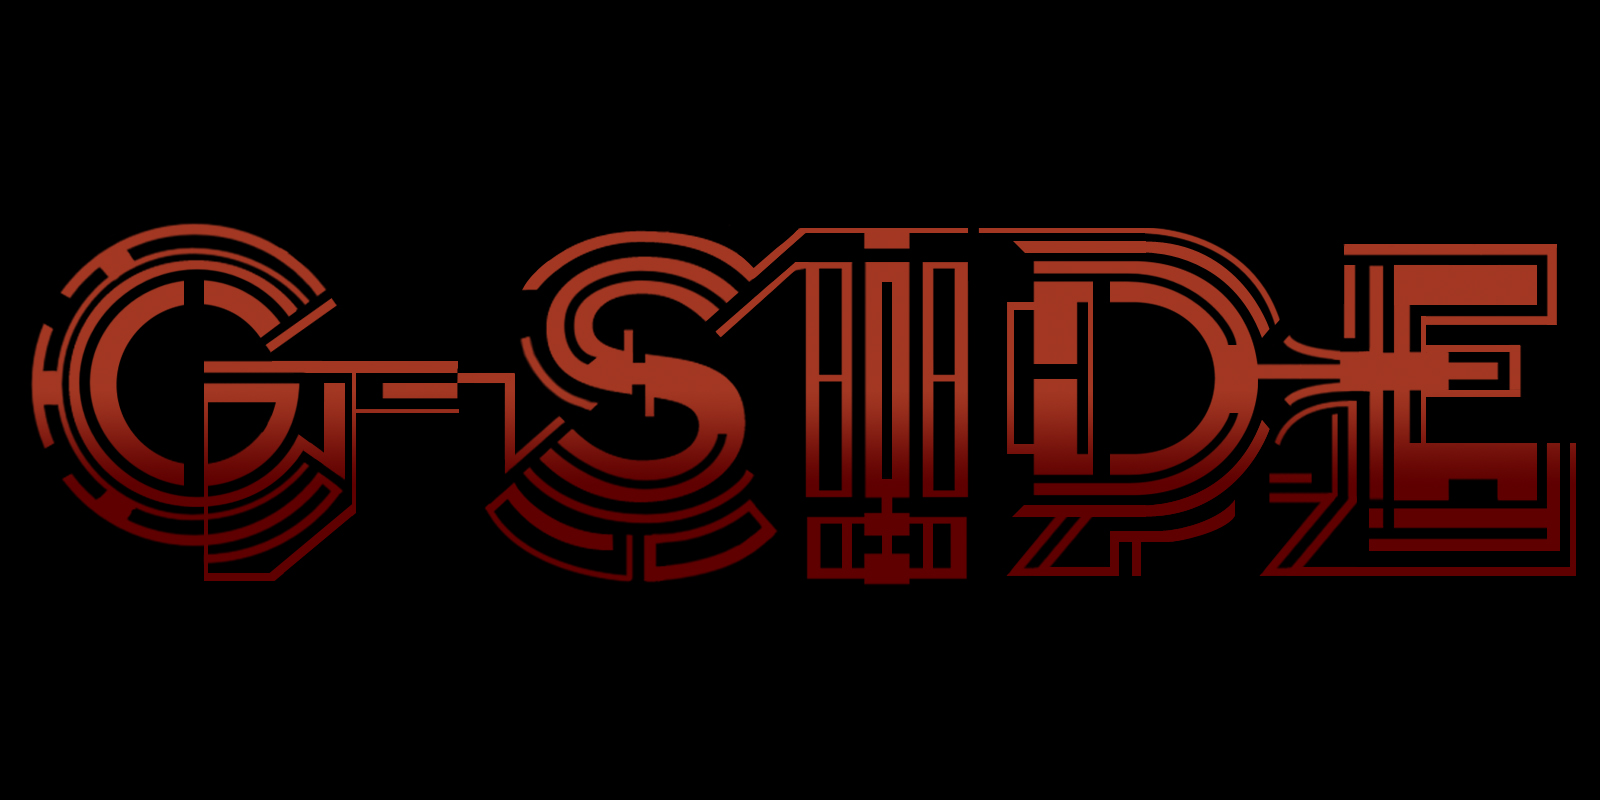 L side. G-Sides. Rive Side logo. Spireside лого. Side Masters надпись.